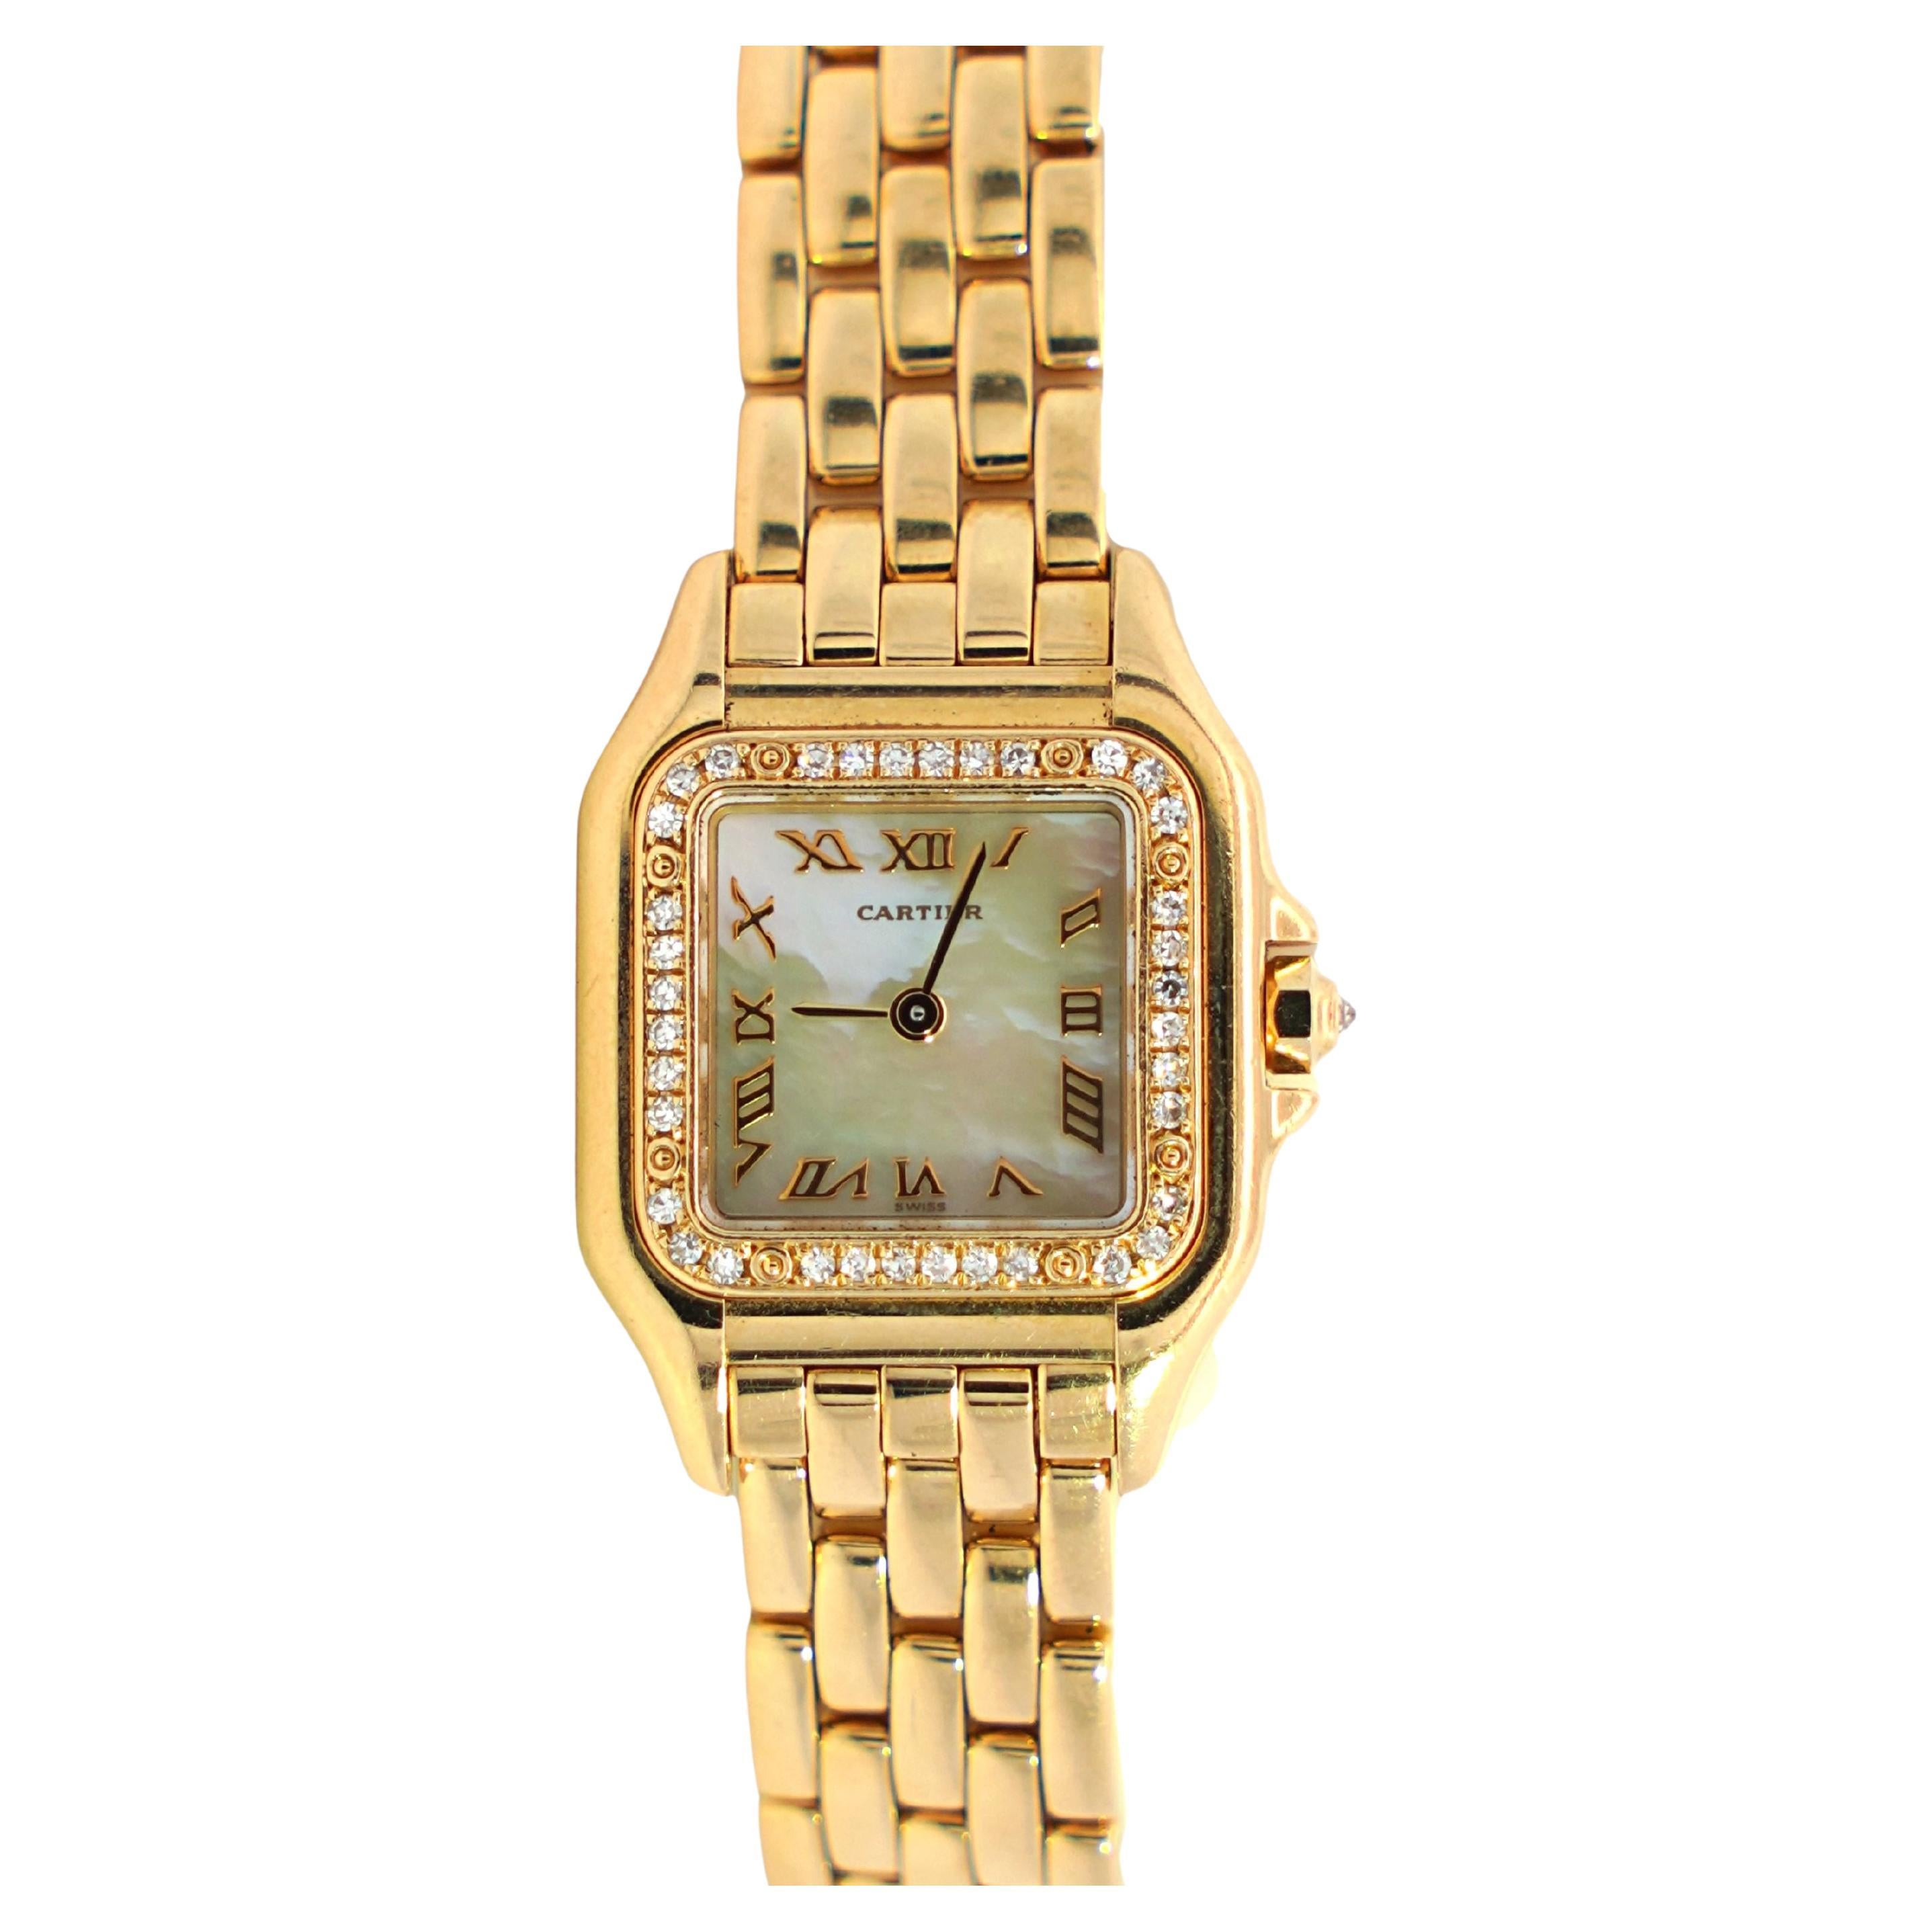 Cartier Panthere MOP 22mm Factory Diamond Bezel Watch in 18K Yellow Gold